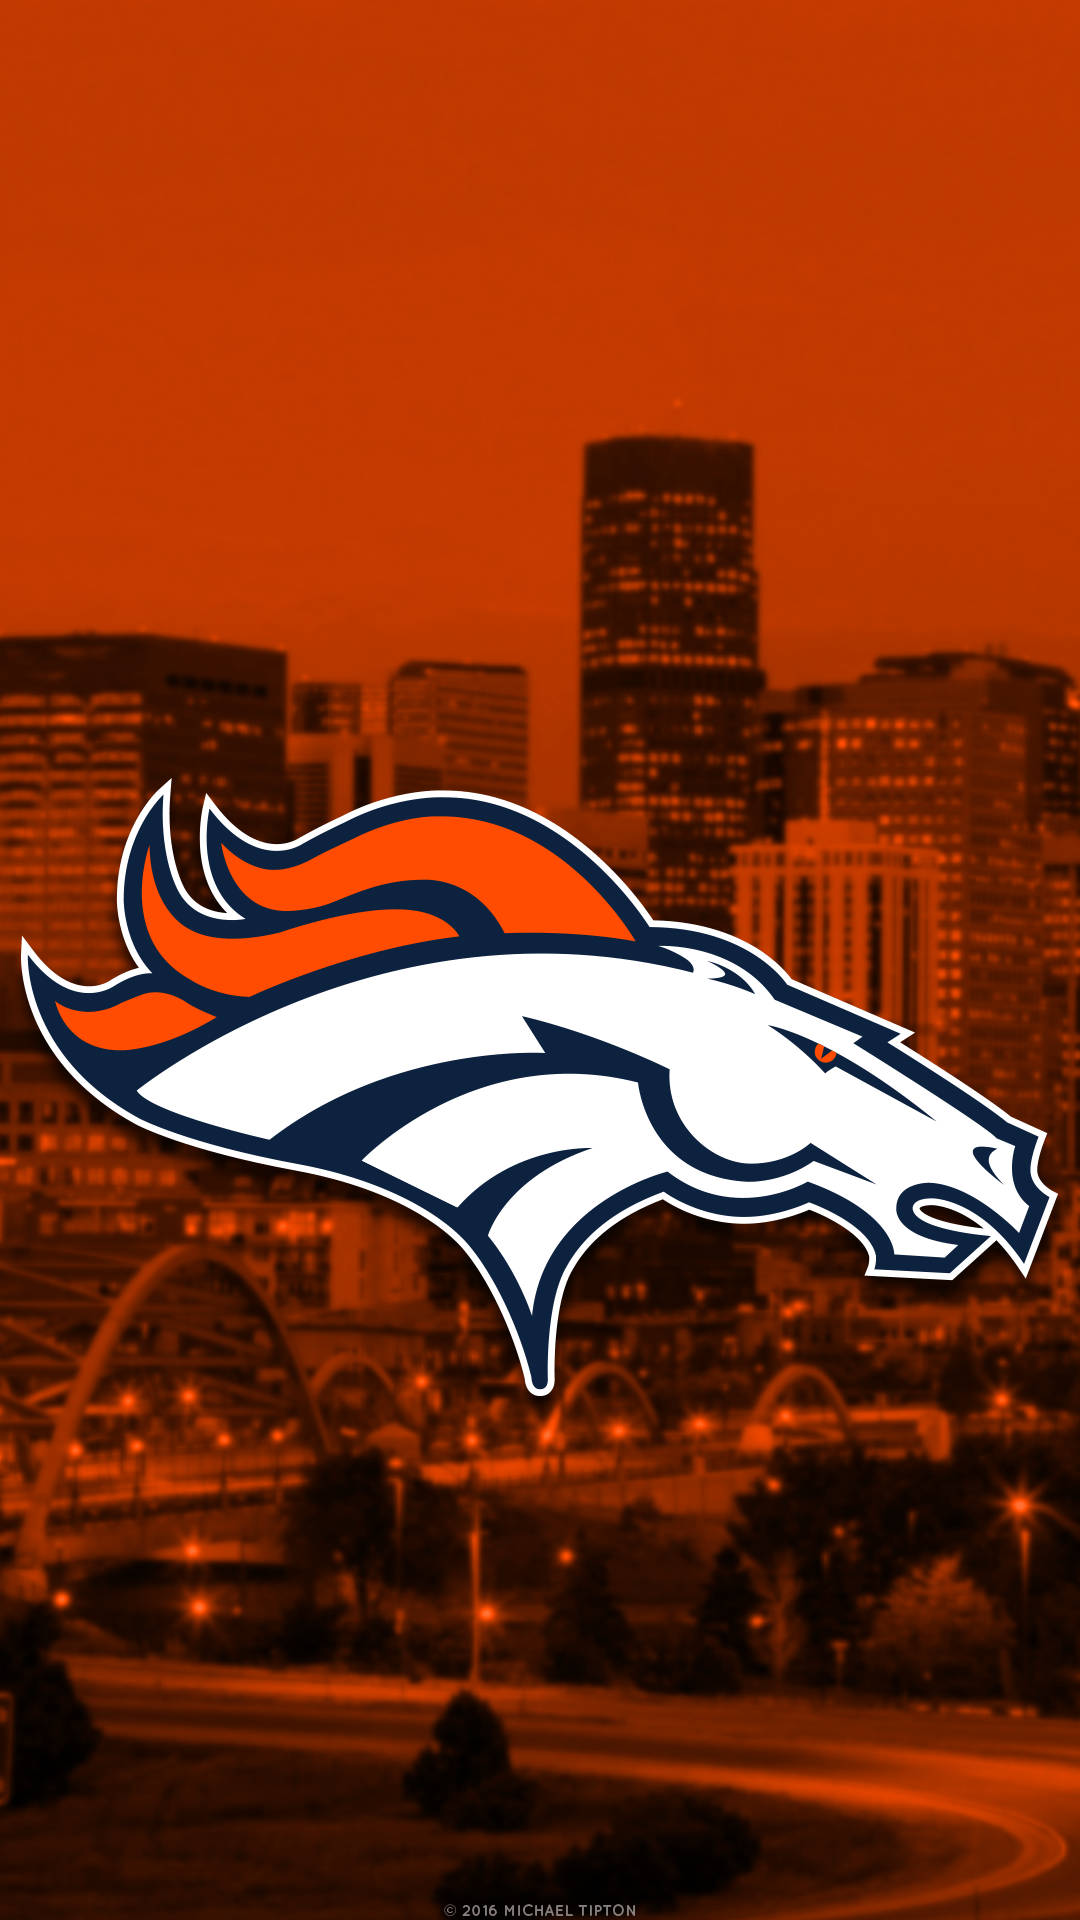 Denver Broncos Wallpaper For Android. Wallpaper. Denver Broncos Background